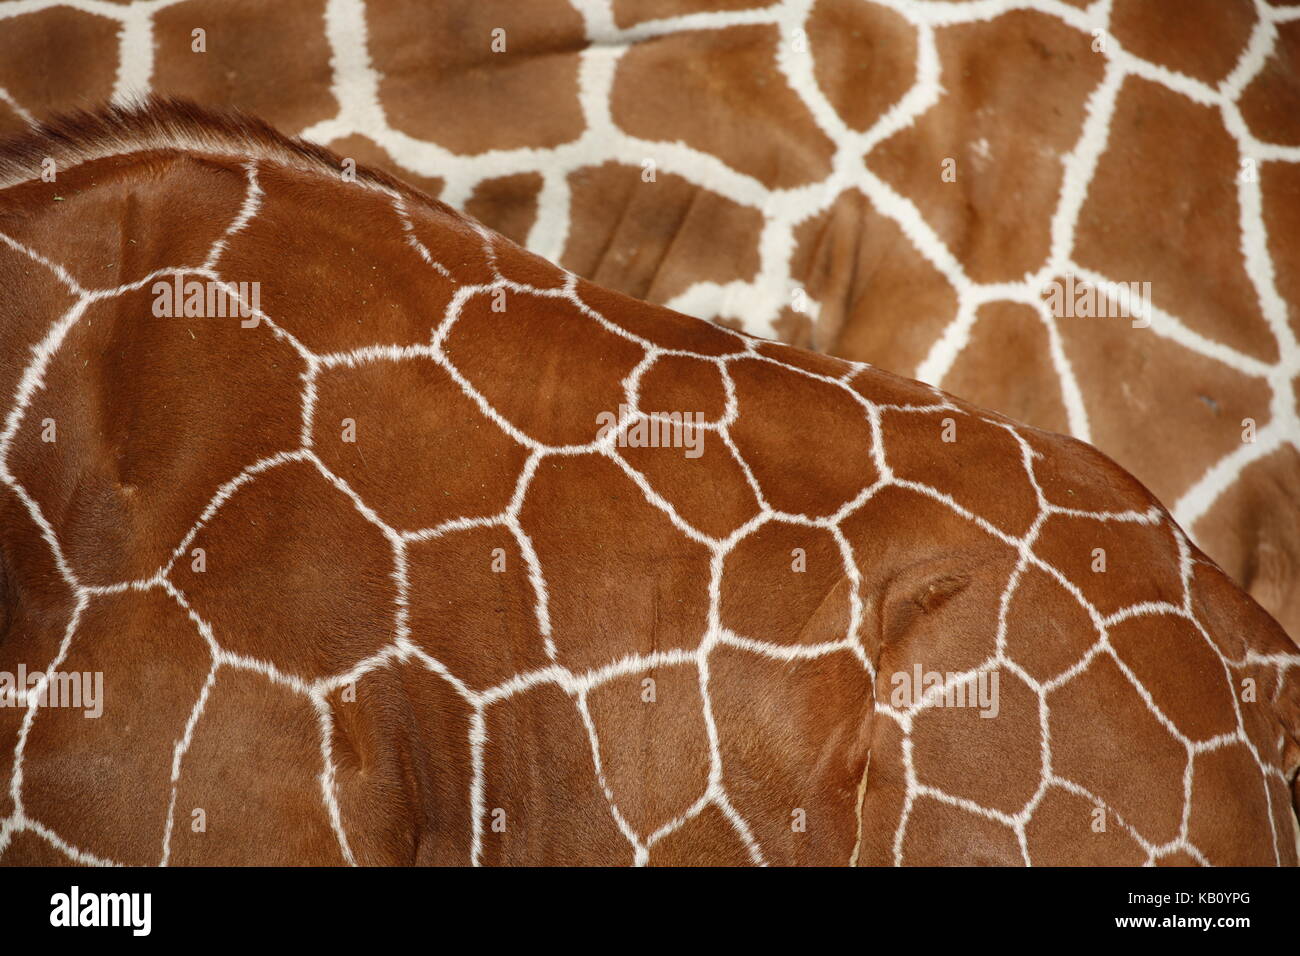 Giraffenmuster - background hintergrund - giraffes Stock Photo